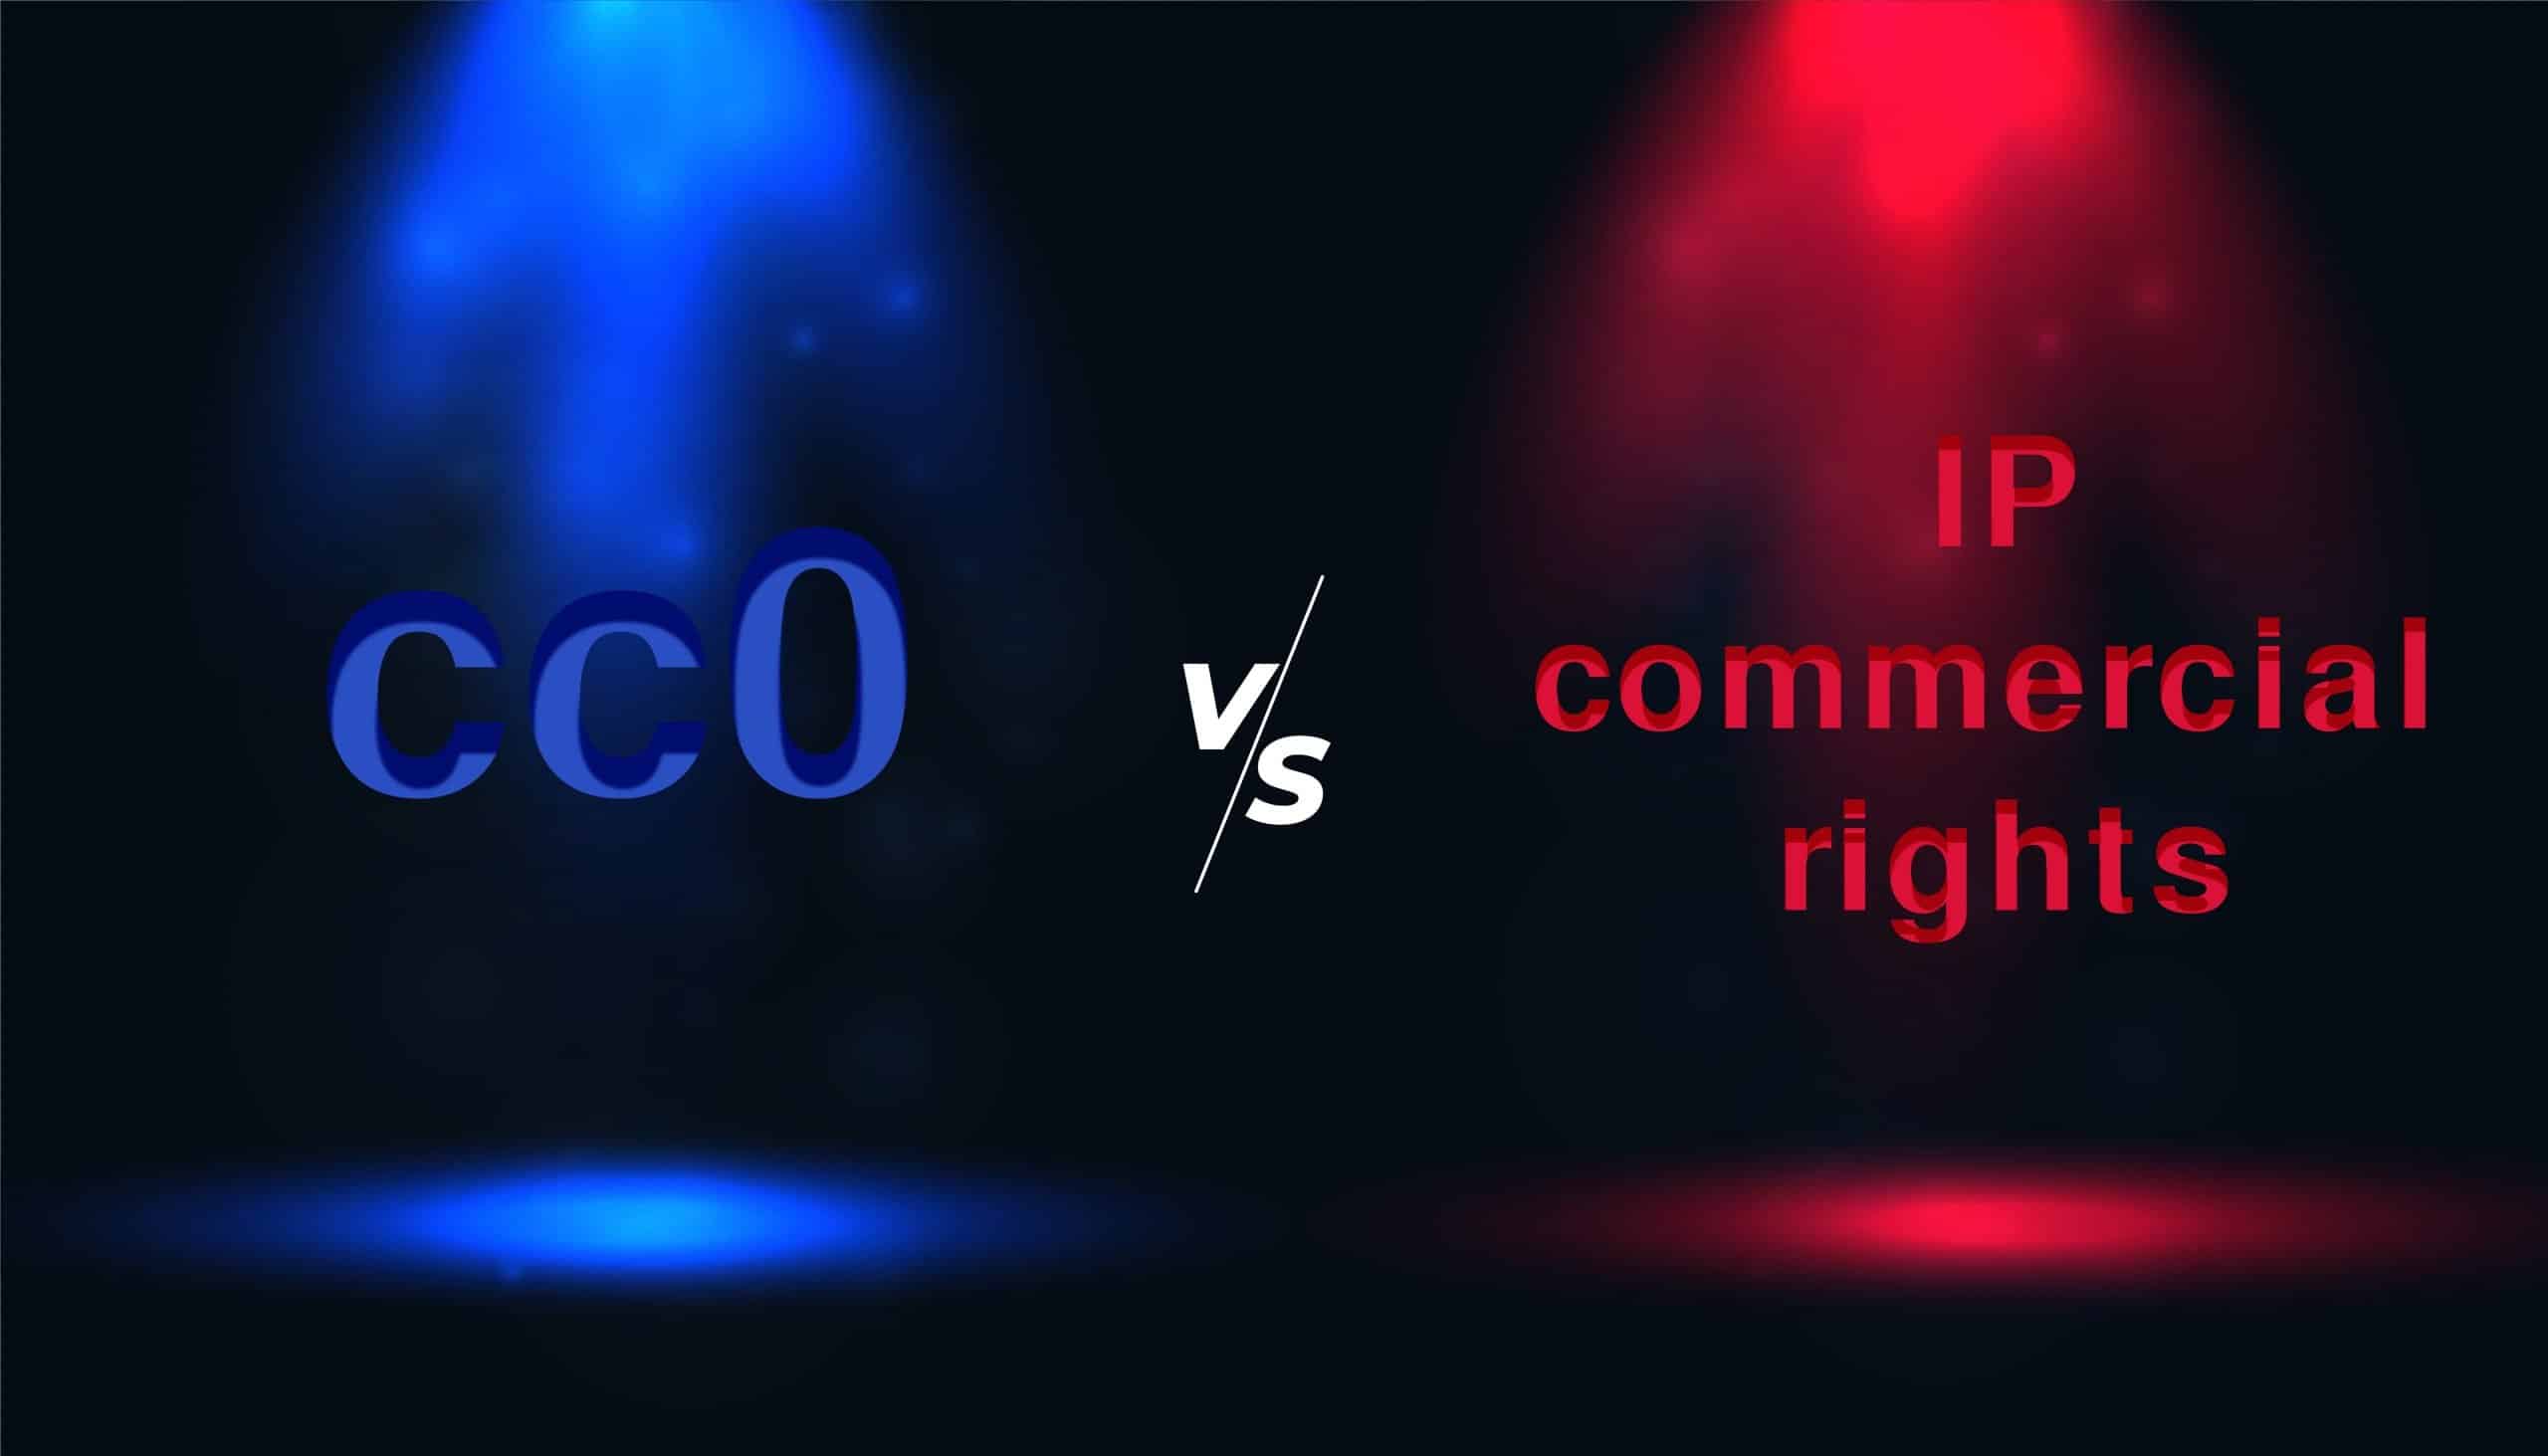 cc0 vs IP immagine astratta dei diritti commerciali